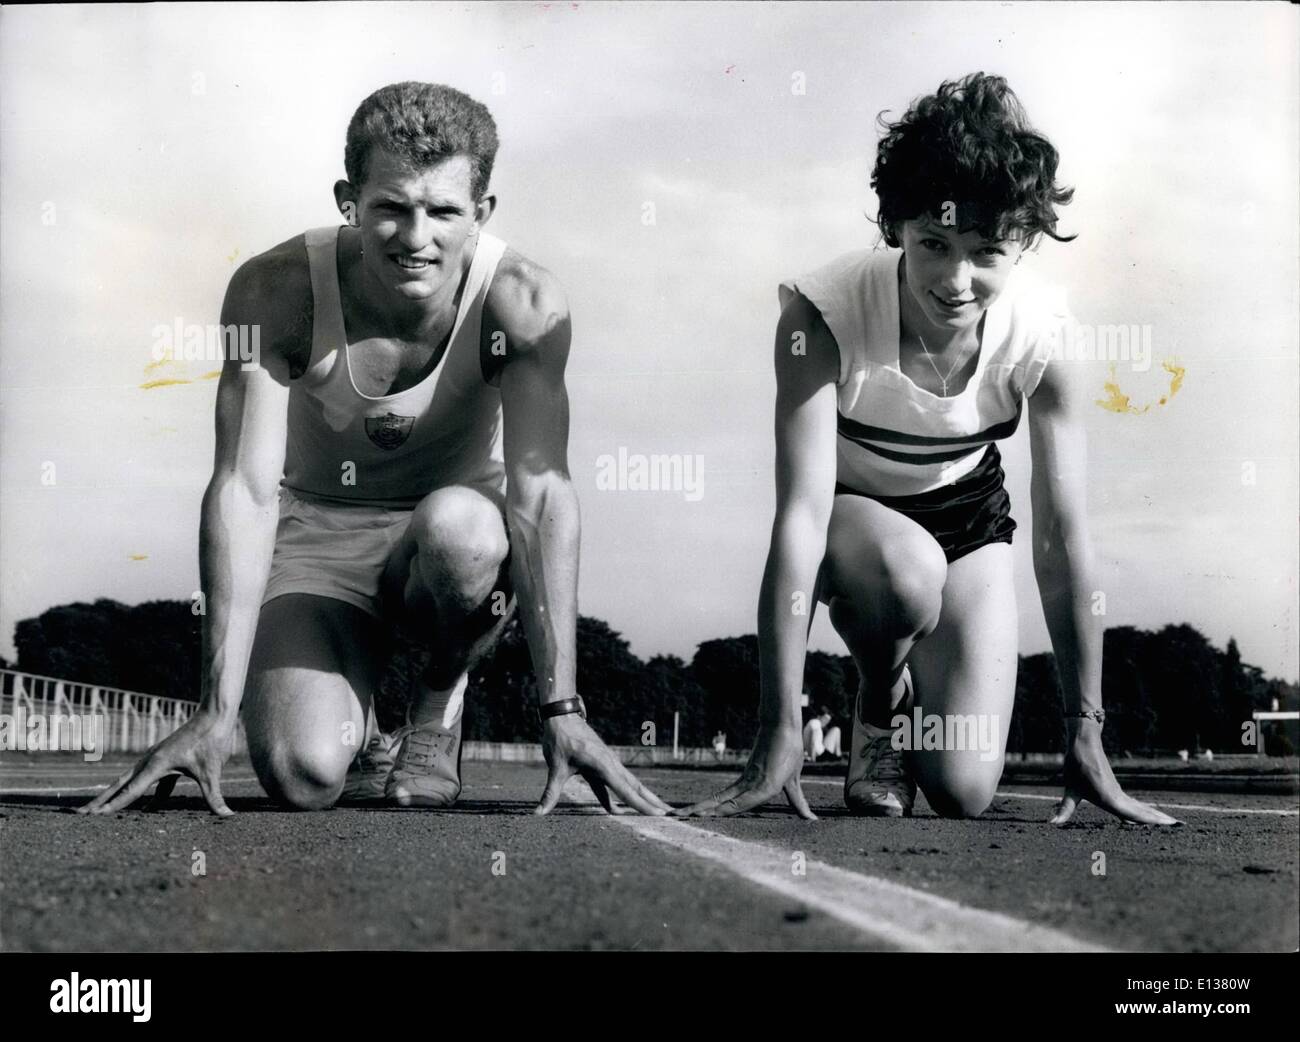 29 février 2012 - Prêt pour le décollage, deux coureurs de 400 mètres qui envisagent de se marier à l'automne, Robbie Brightwell et Ann Packer. Banque D'Images